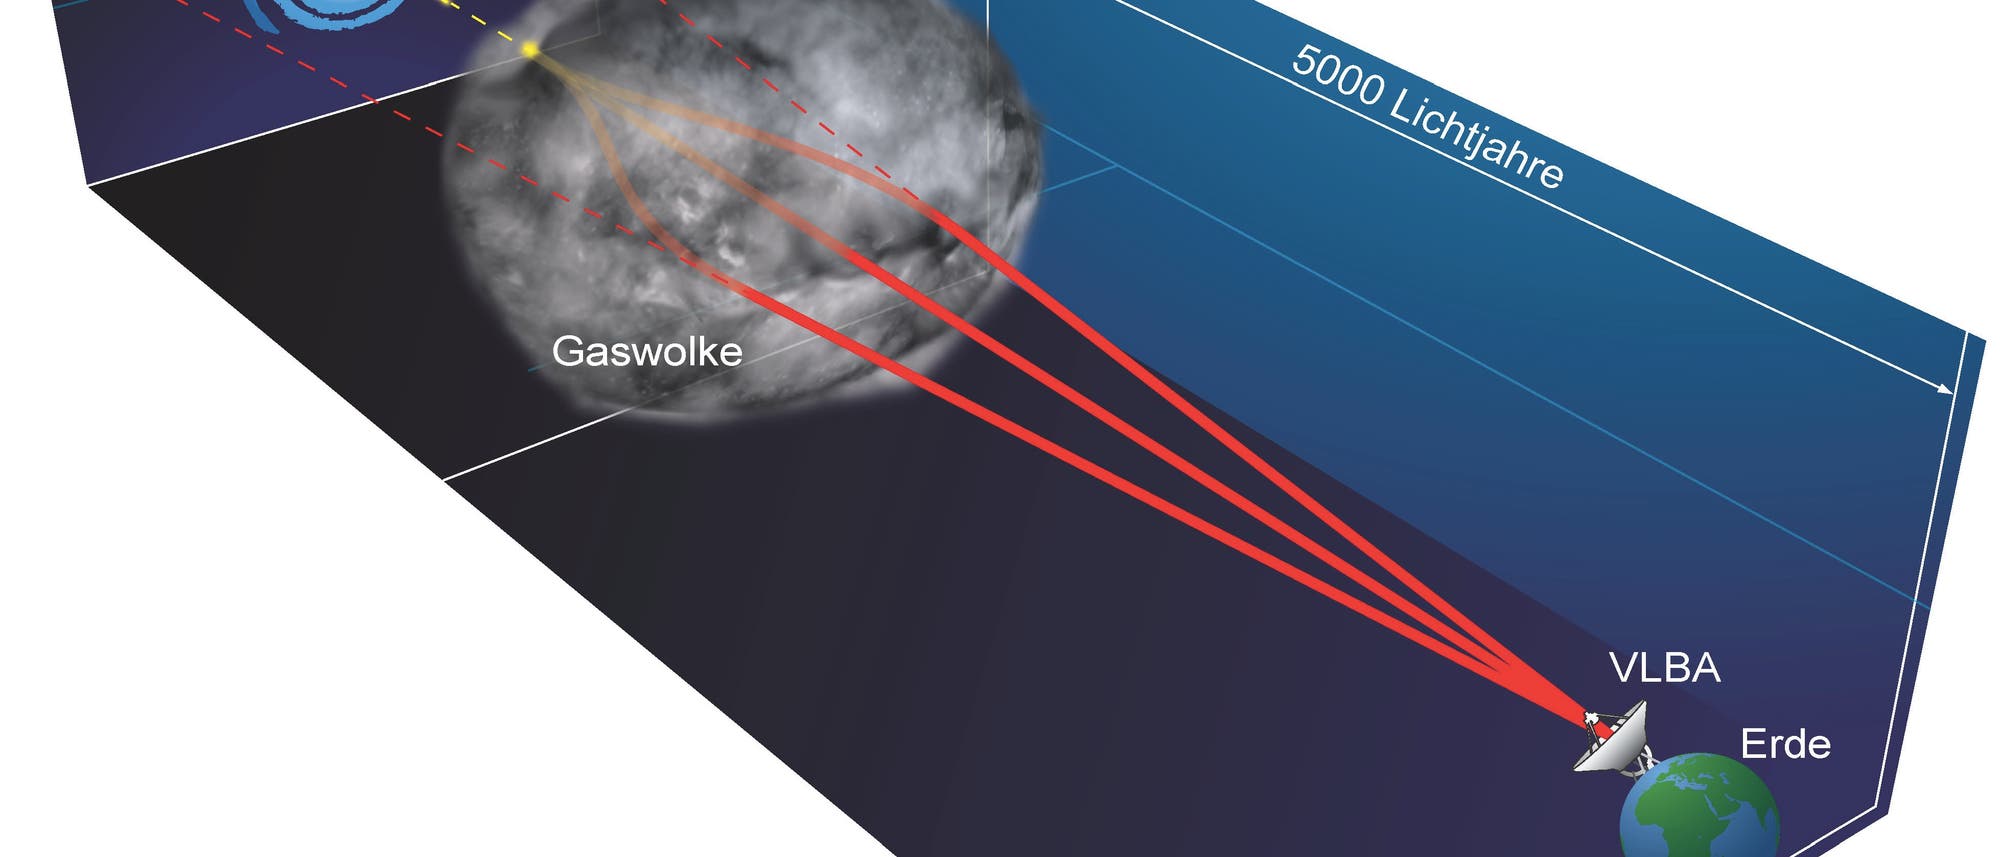 Abgelenkte Radiowellen eines Quasars (künstlerische Darstellung)